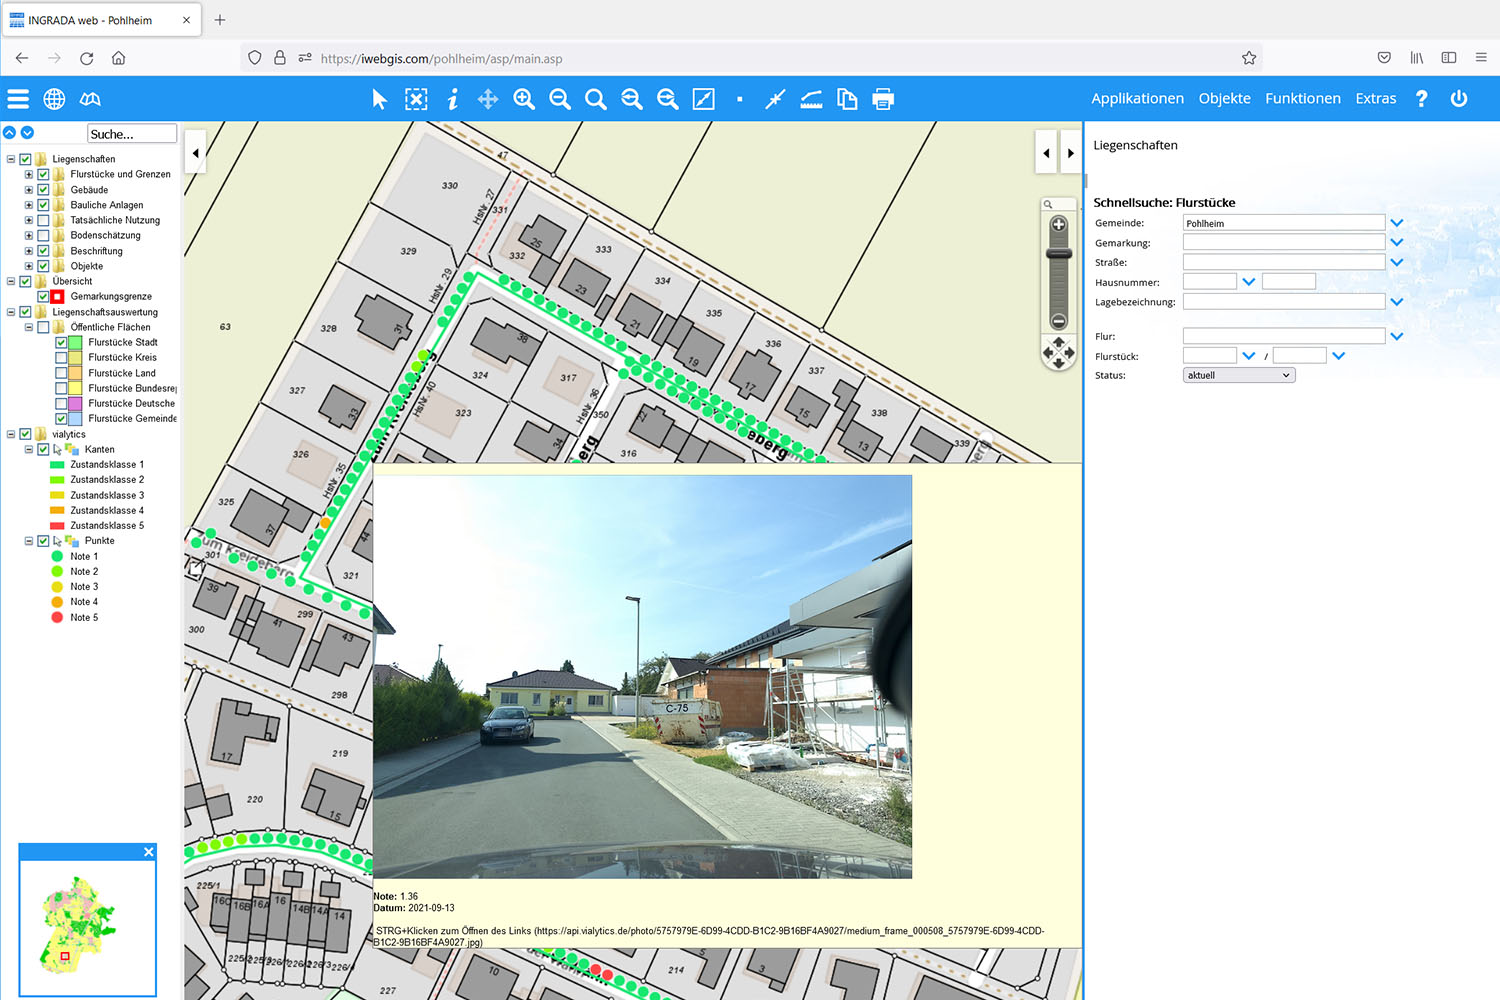 Ein screenshot von dem Ingrada system welches mit vialytics zusammenarbeitet für eine bessere Verkehrssicherheit